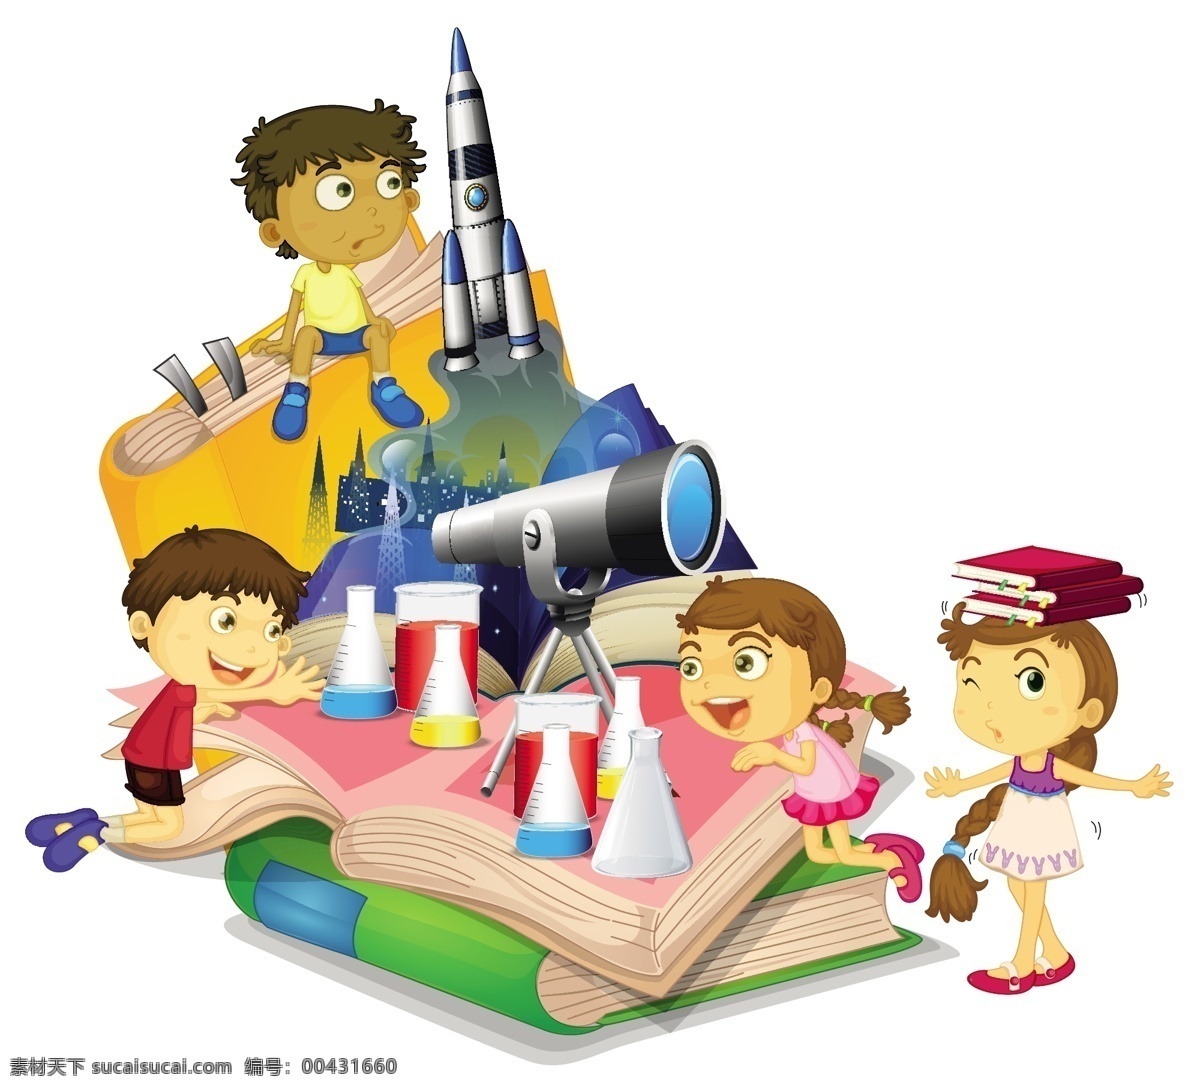 卡通 太空 宇宙 卡通太空宇宙 火箭 科学 行星 天文学 图标 地球 土星 占星术 火星 符号 太阳系 技术 木星 金星 卡通儿童 卡通设计